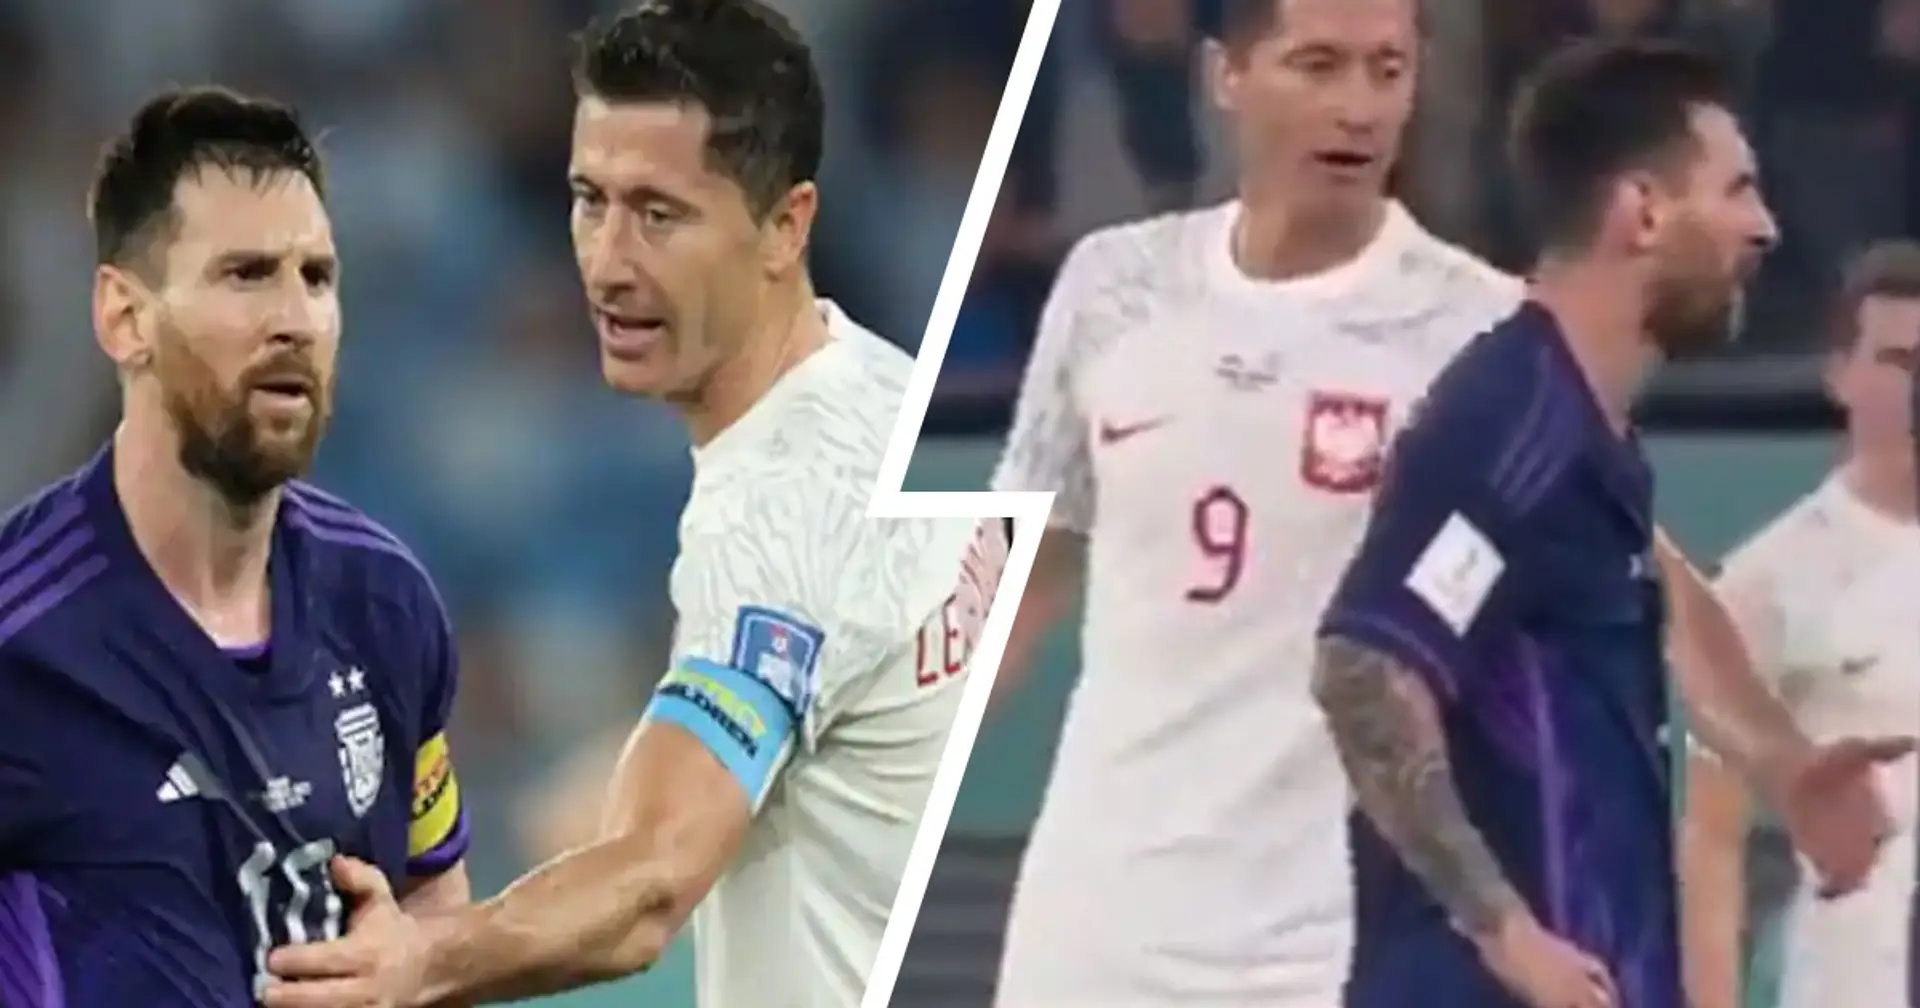 Pris en photo: Messi ignore le geste de poignée de main de Lewandowski lors du match de la Coupe du monde